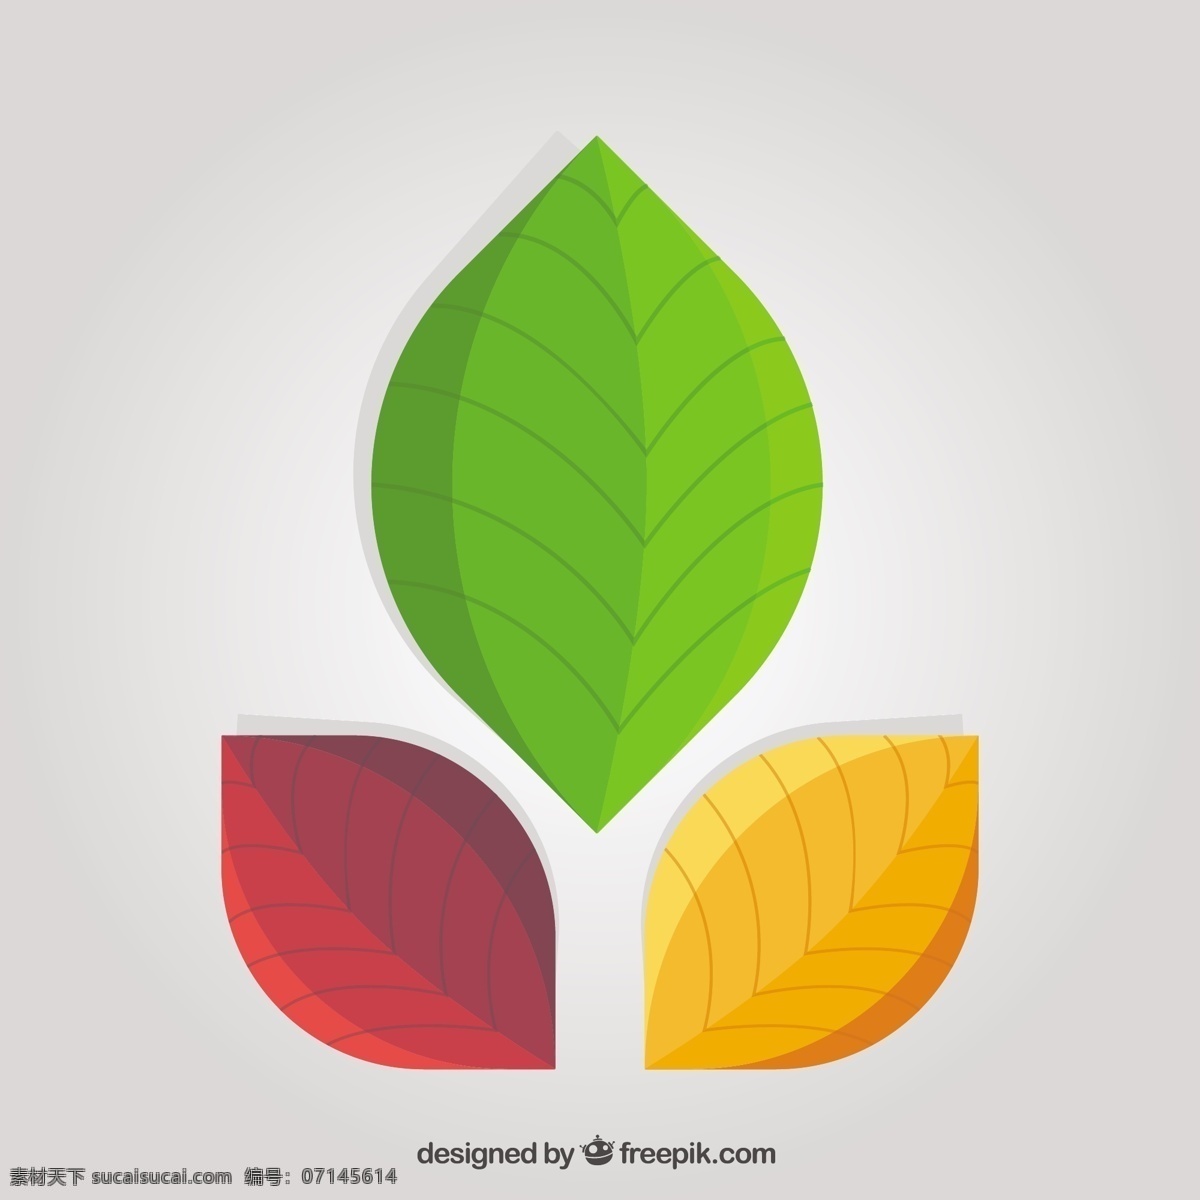 叶子图案 标志 抽象 自然 植物 公司 符号 身份